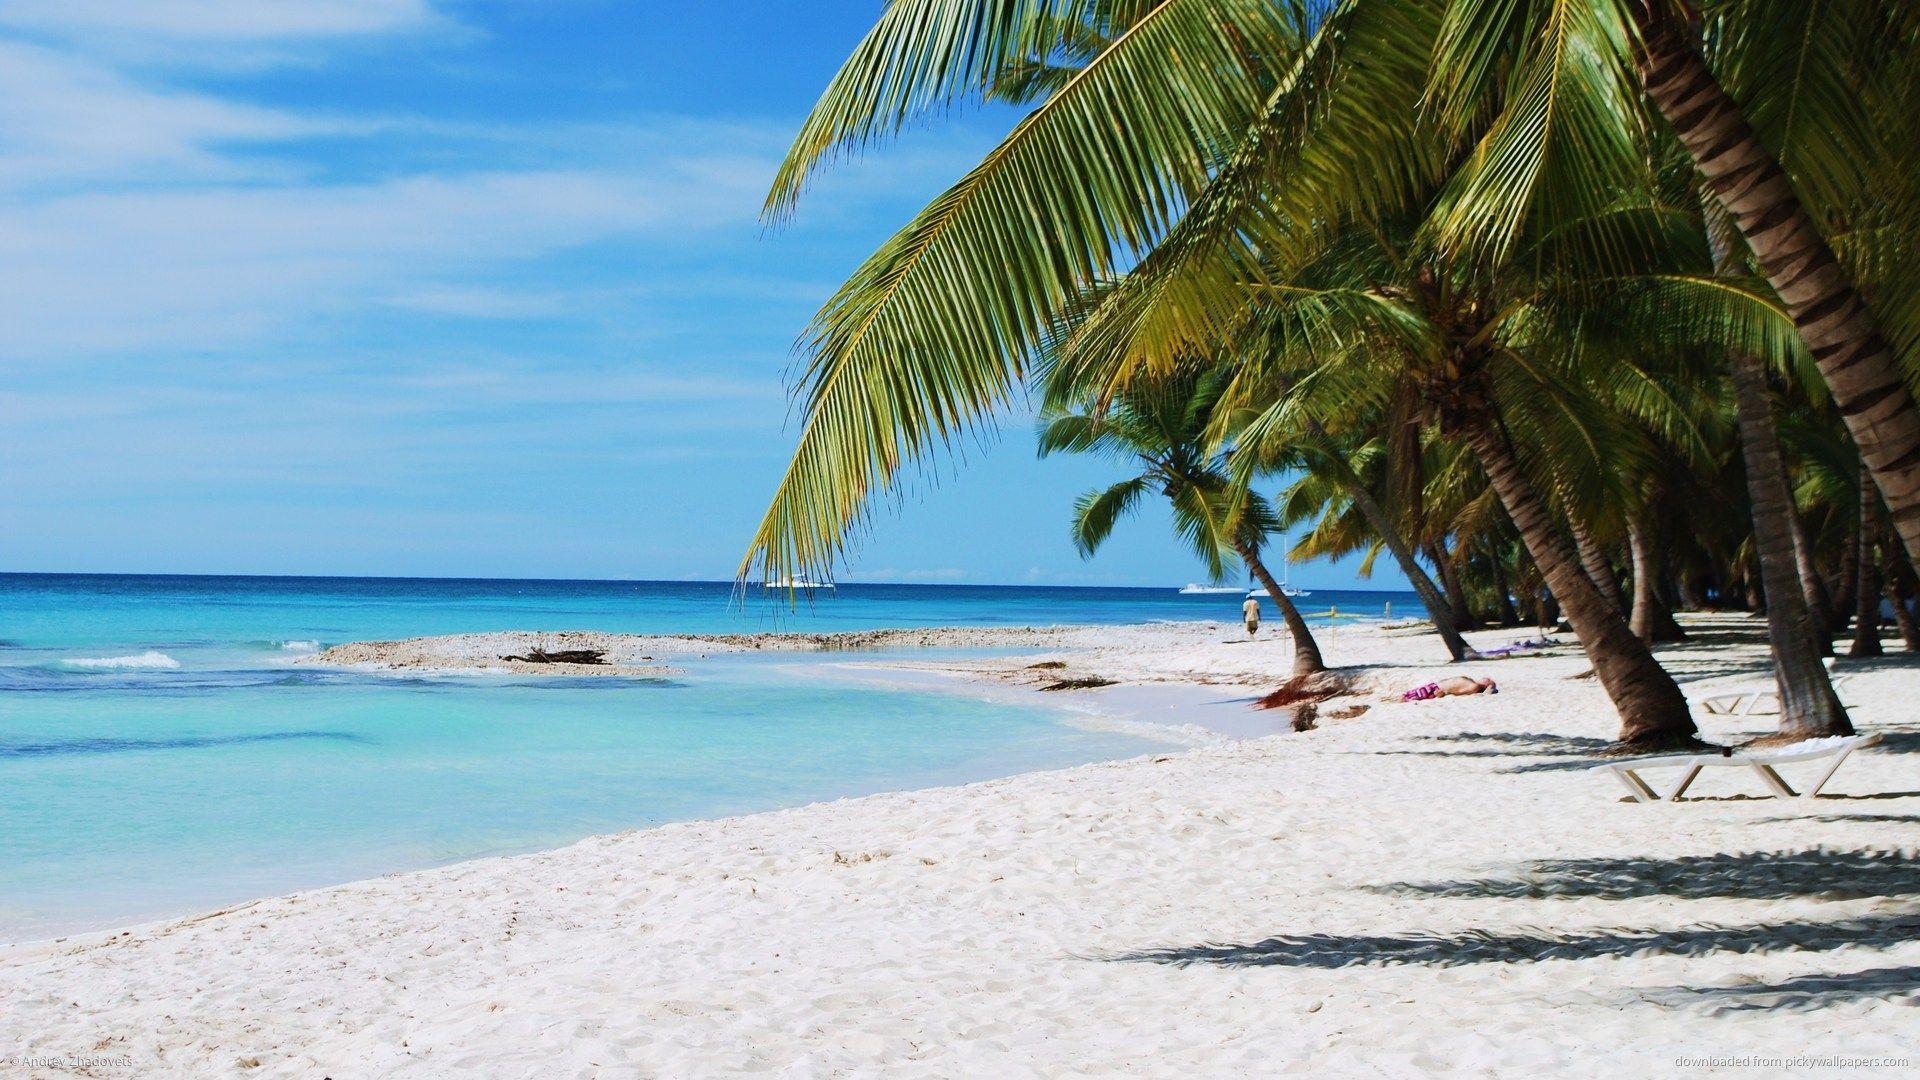 Dominika’nın Turizm Raporlarında Önemli Artışlar